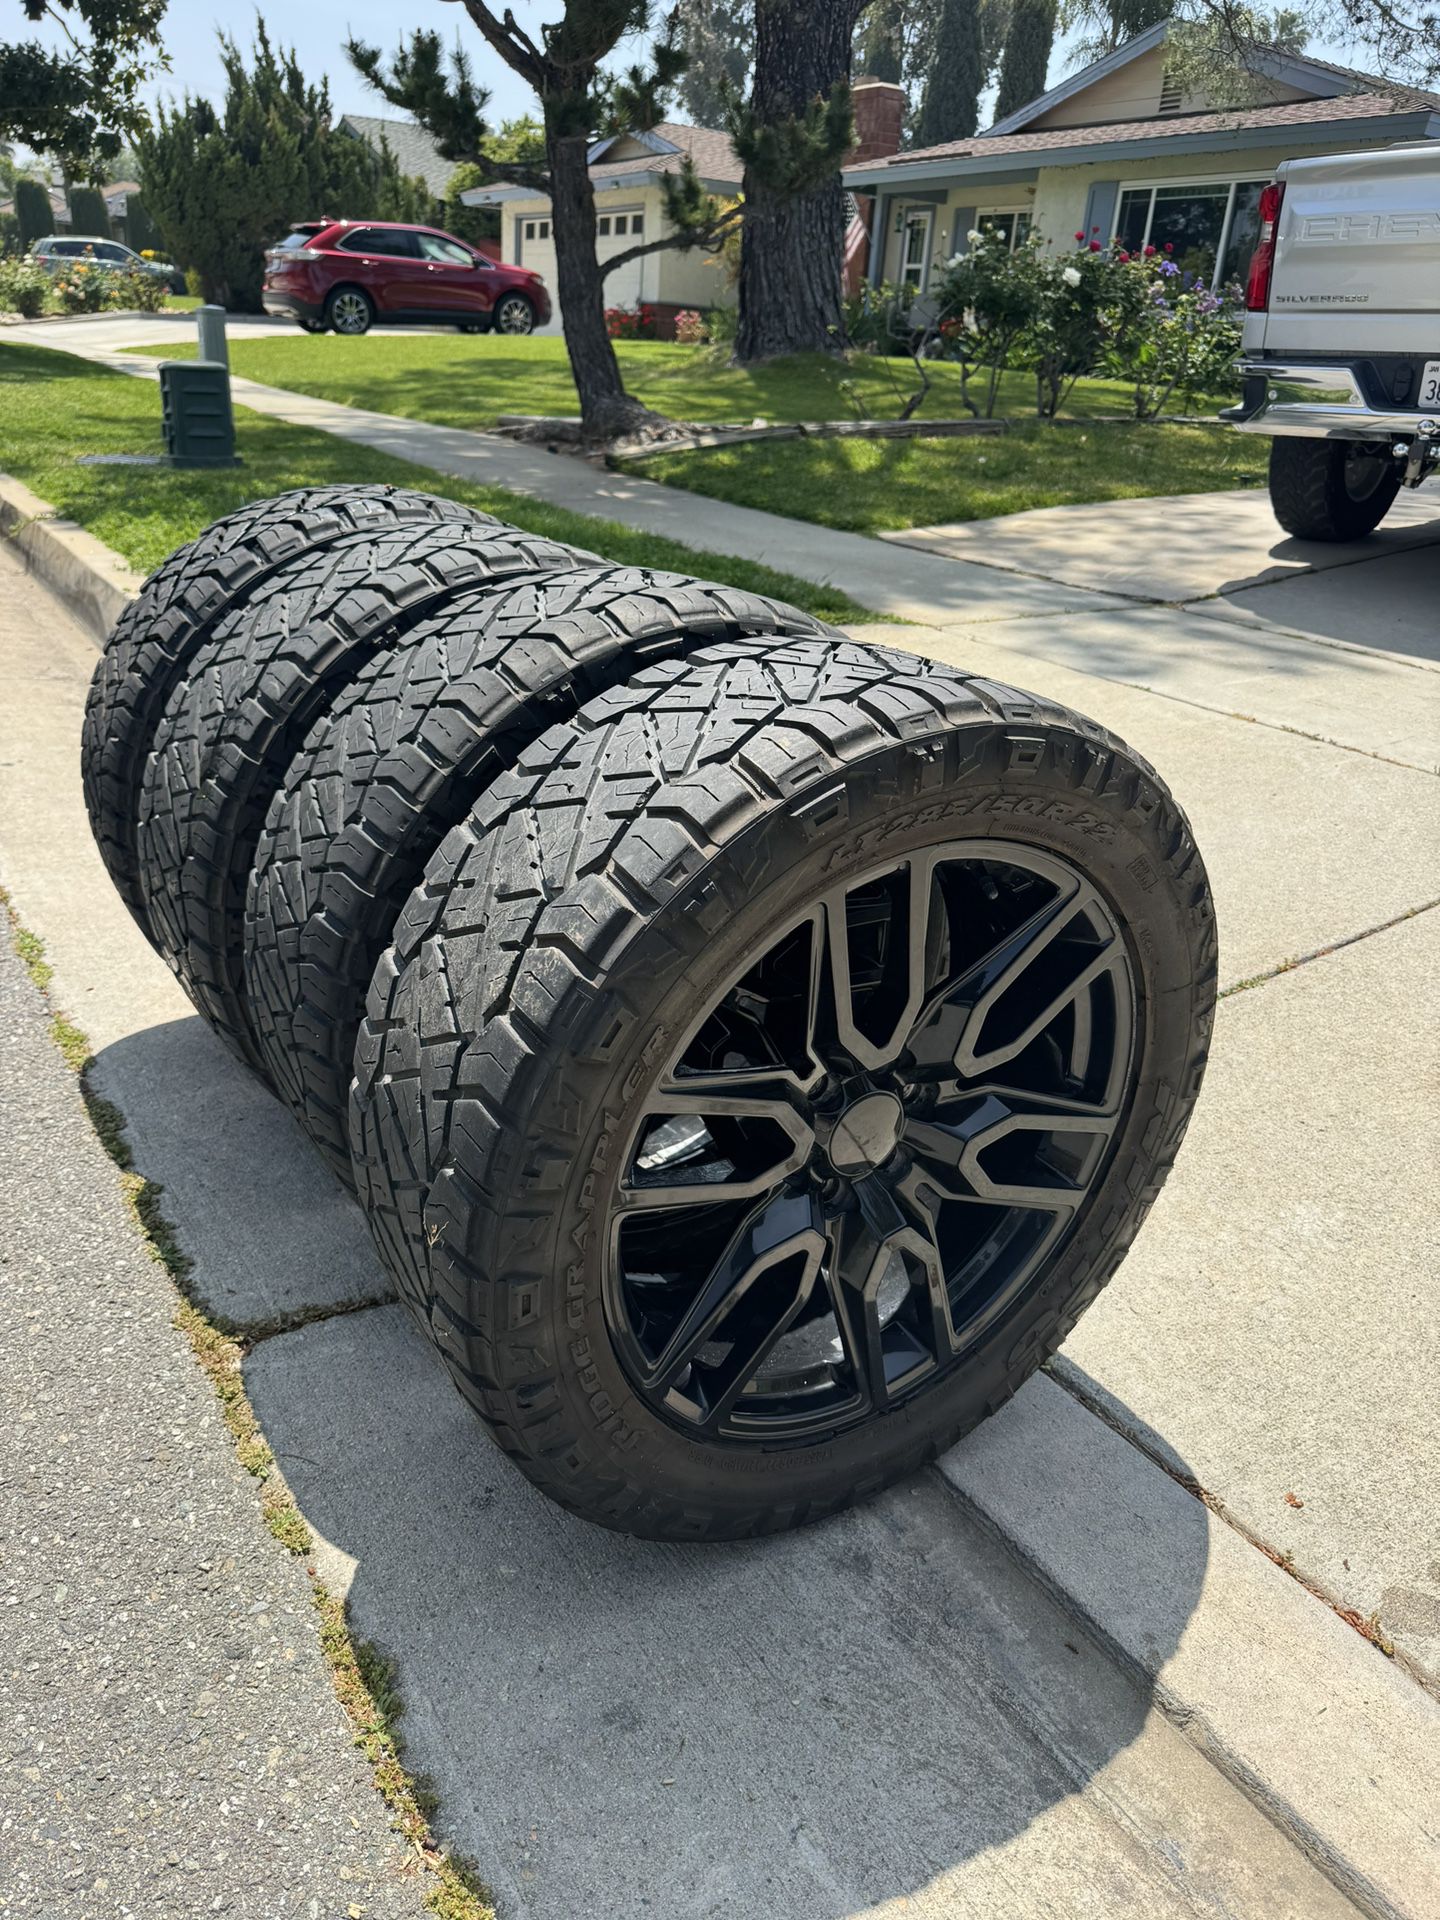 22” Silverado Wheels And Tires